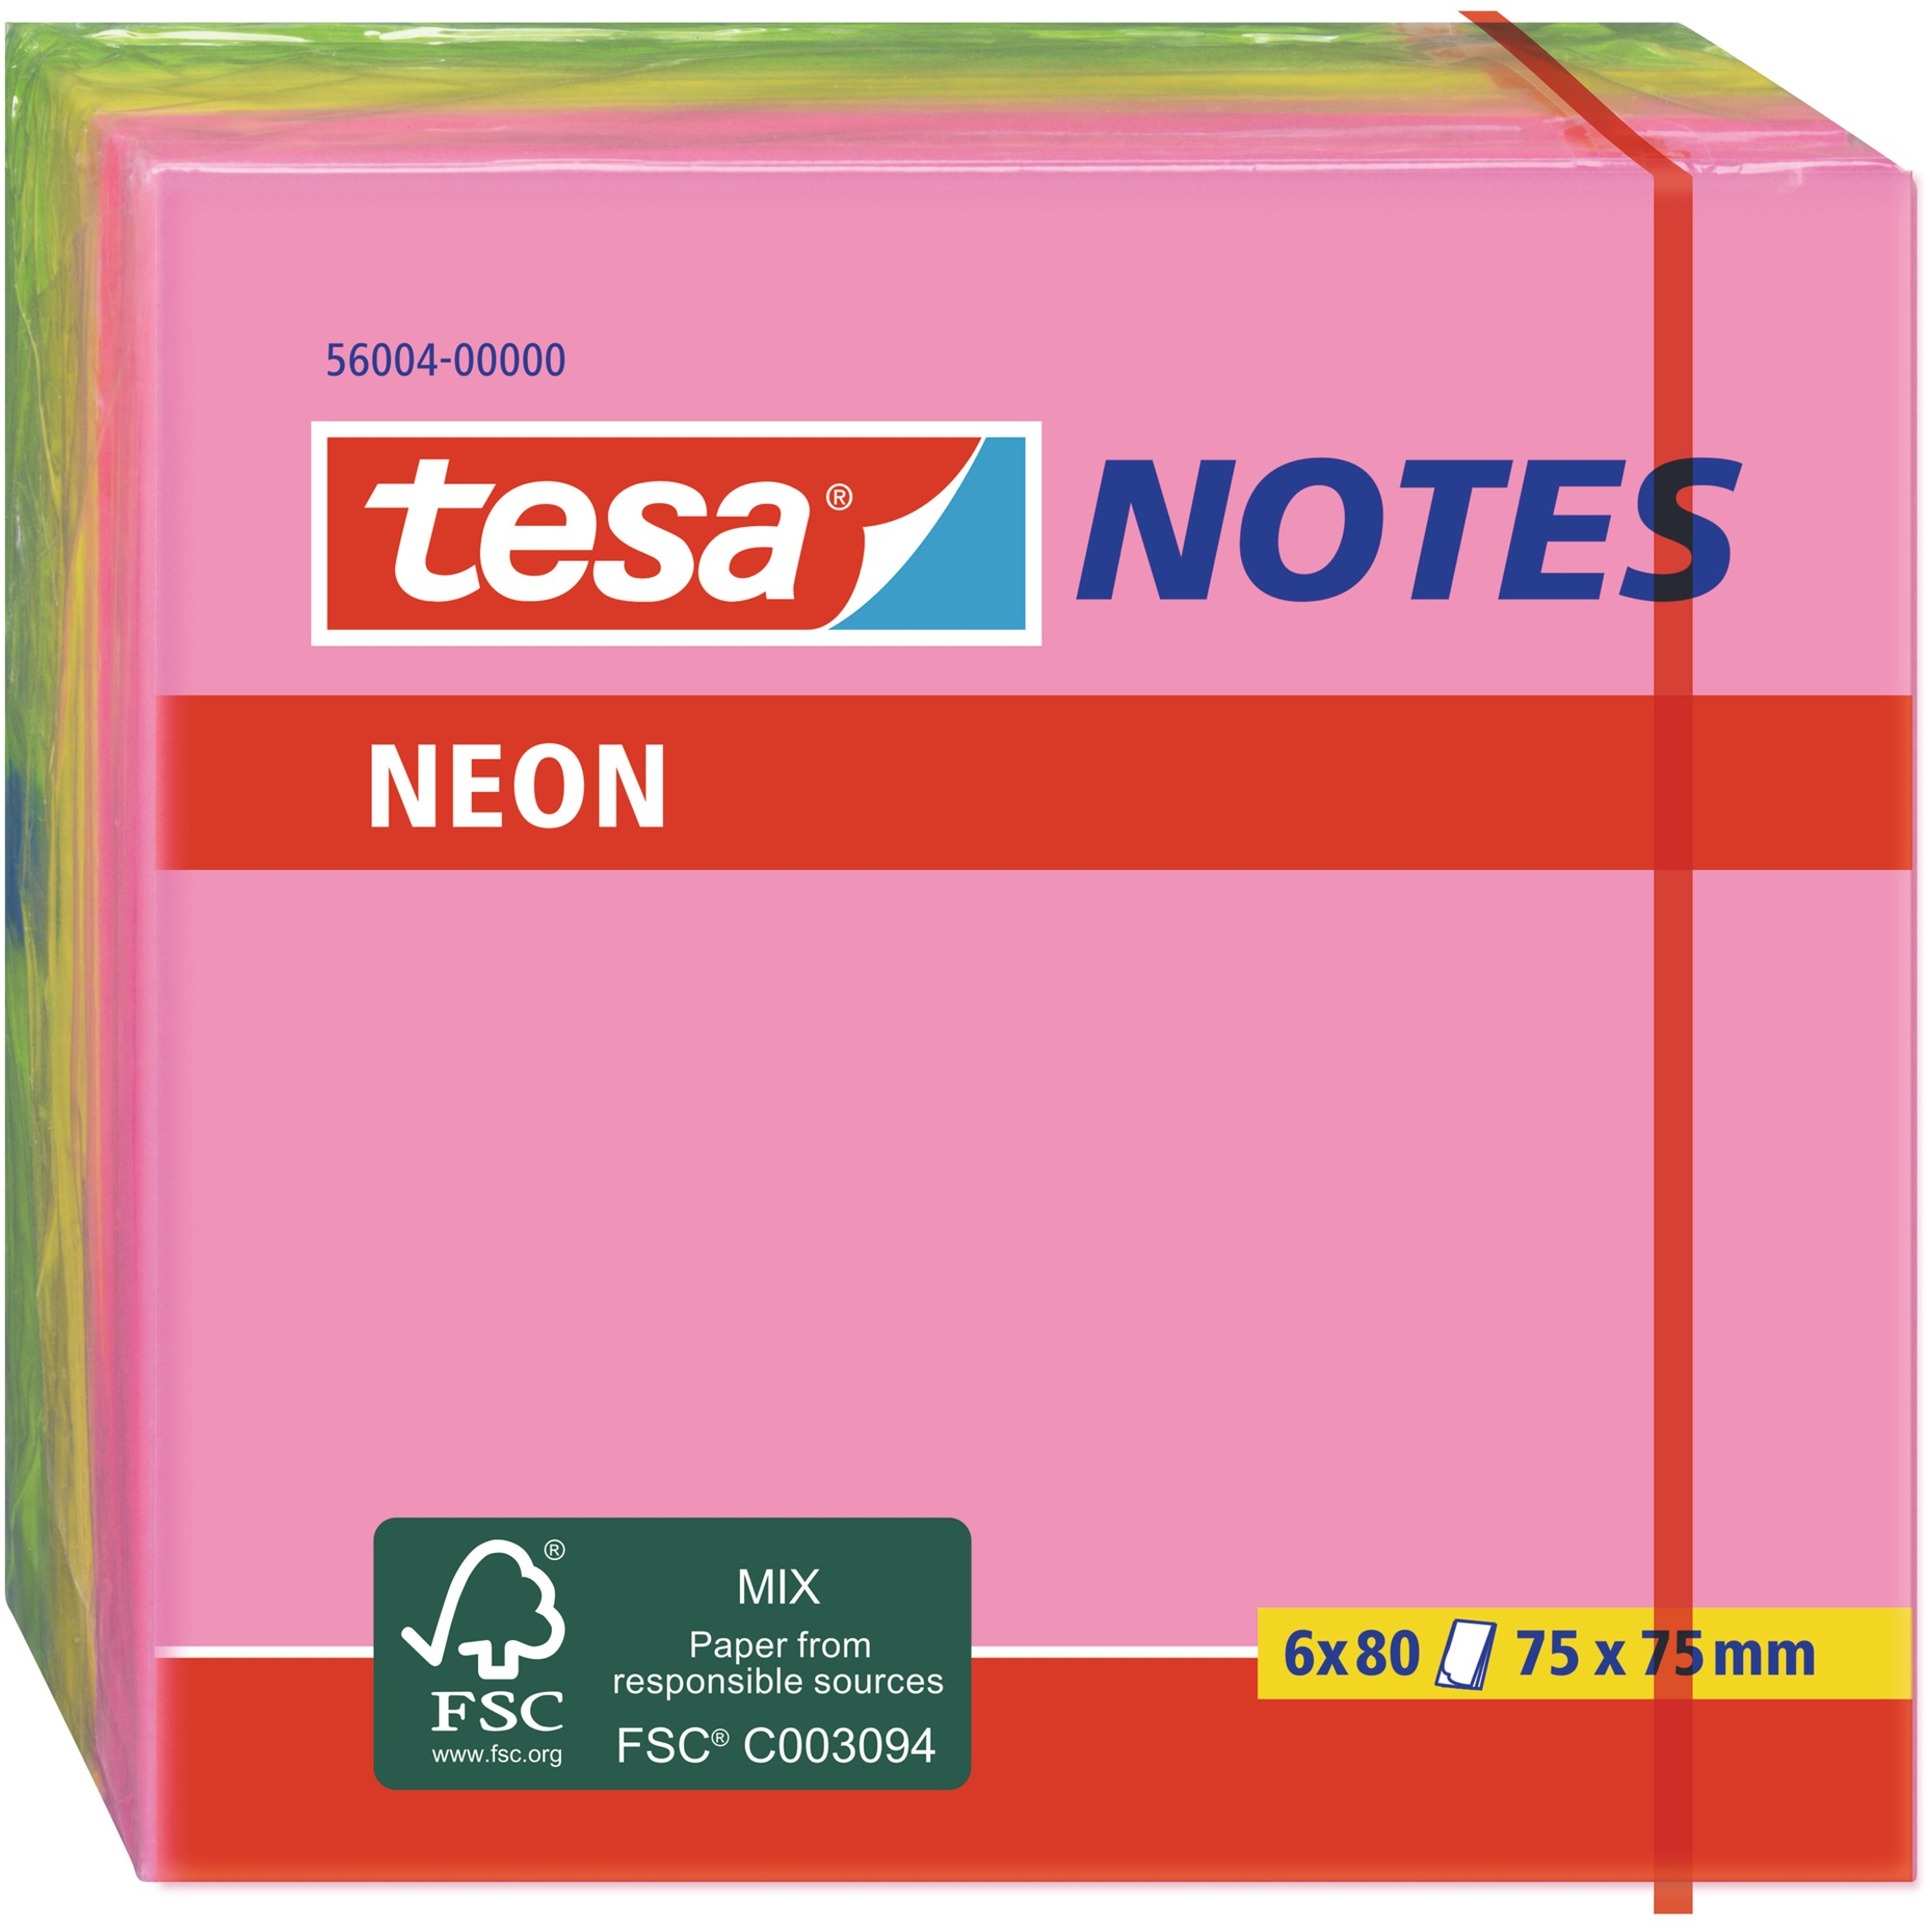 Image of Alternate - Neon Notes, 6 x 80 Blatt, Aufkleber online einkaufen bei Alternate